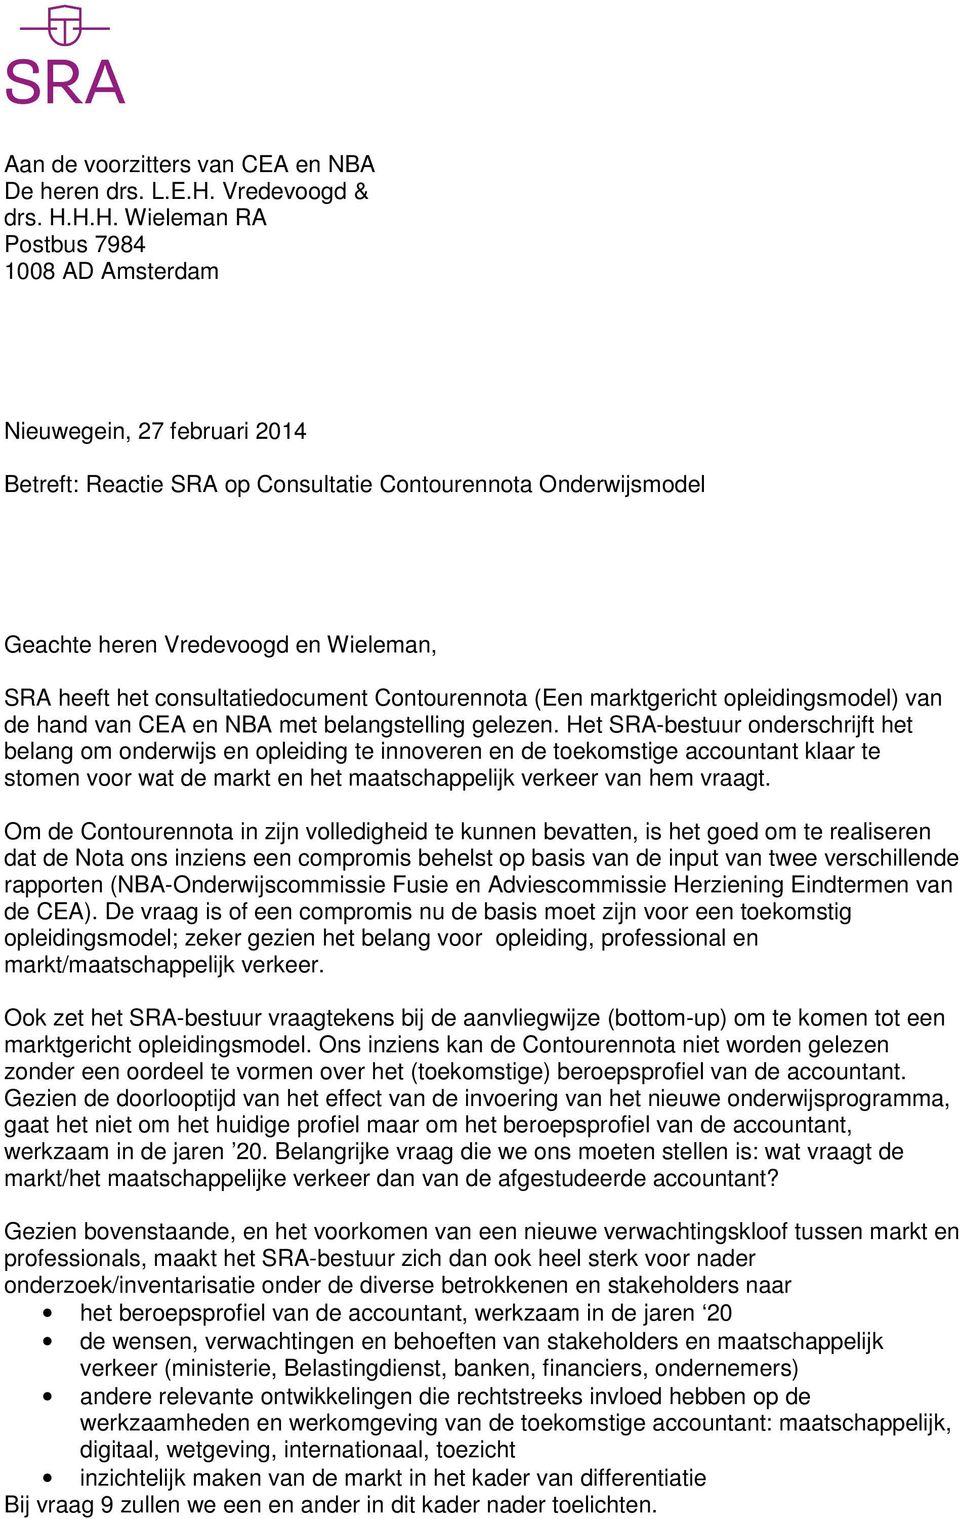 H.H. Wieleman RA Postbus 7984 1008 AD Amsterdam Nieuwegein, 27 februari 2014 Betreft: Reactie SRA op Consultatie Contourennota Onderwijsmodel Geachte heren Vredevoogd en Wieleman, SRA heeft het